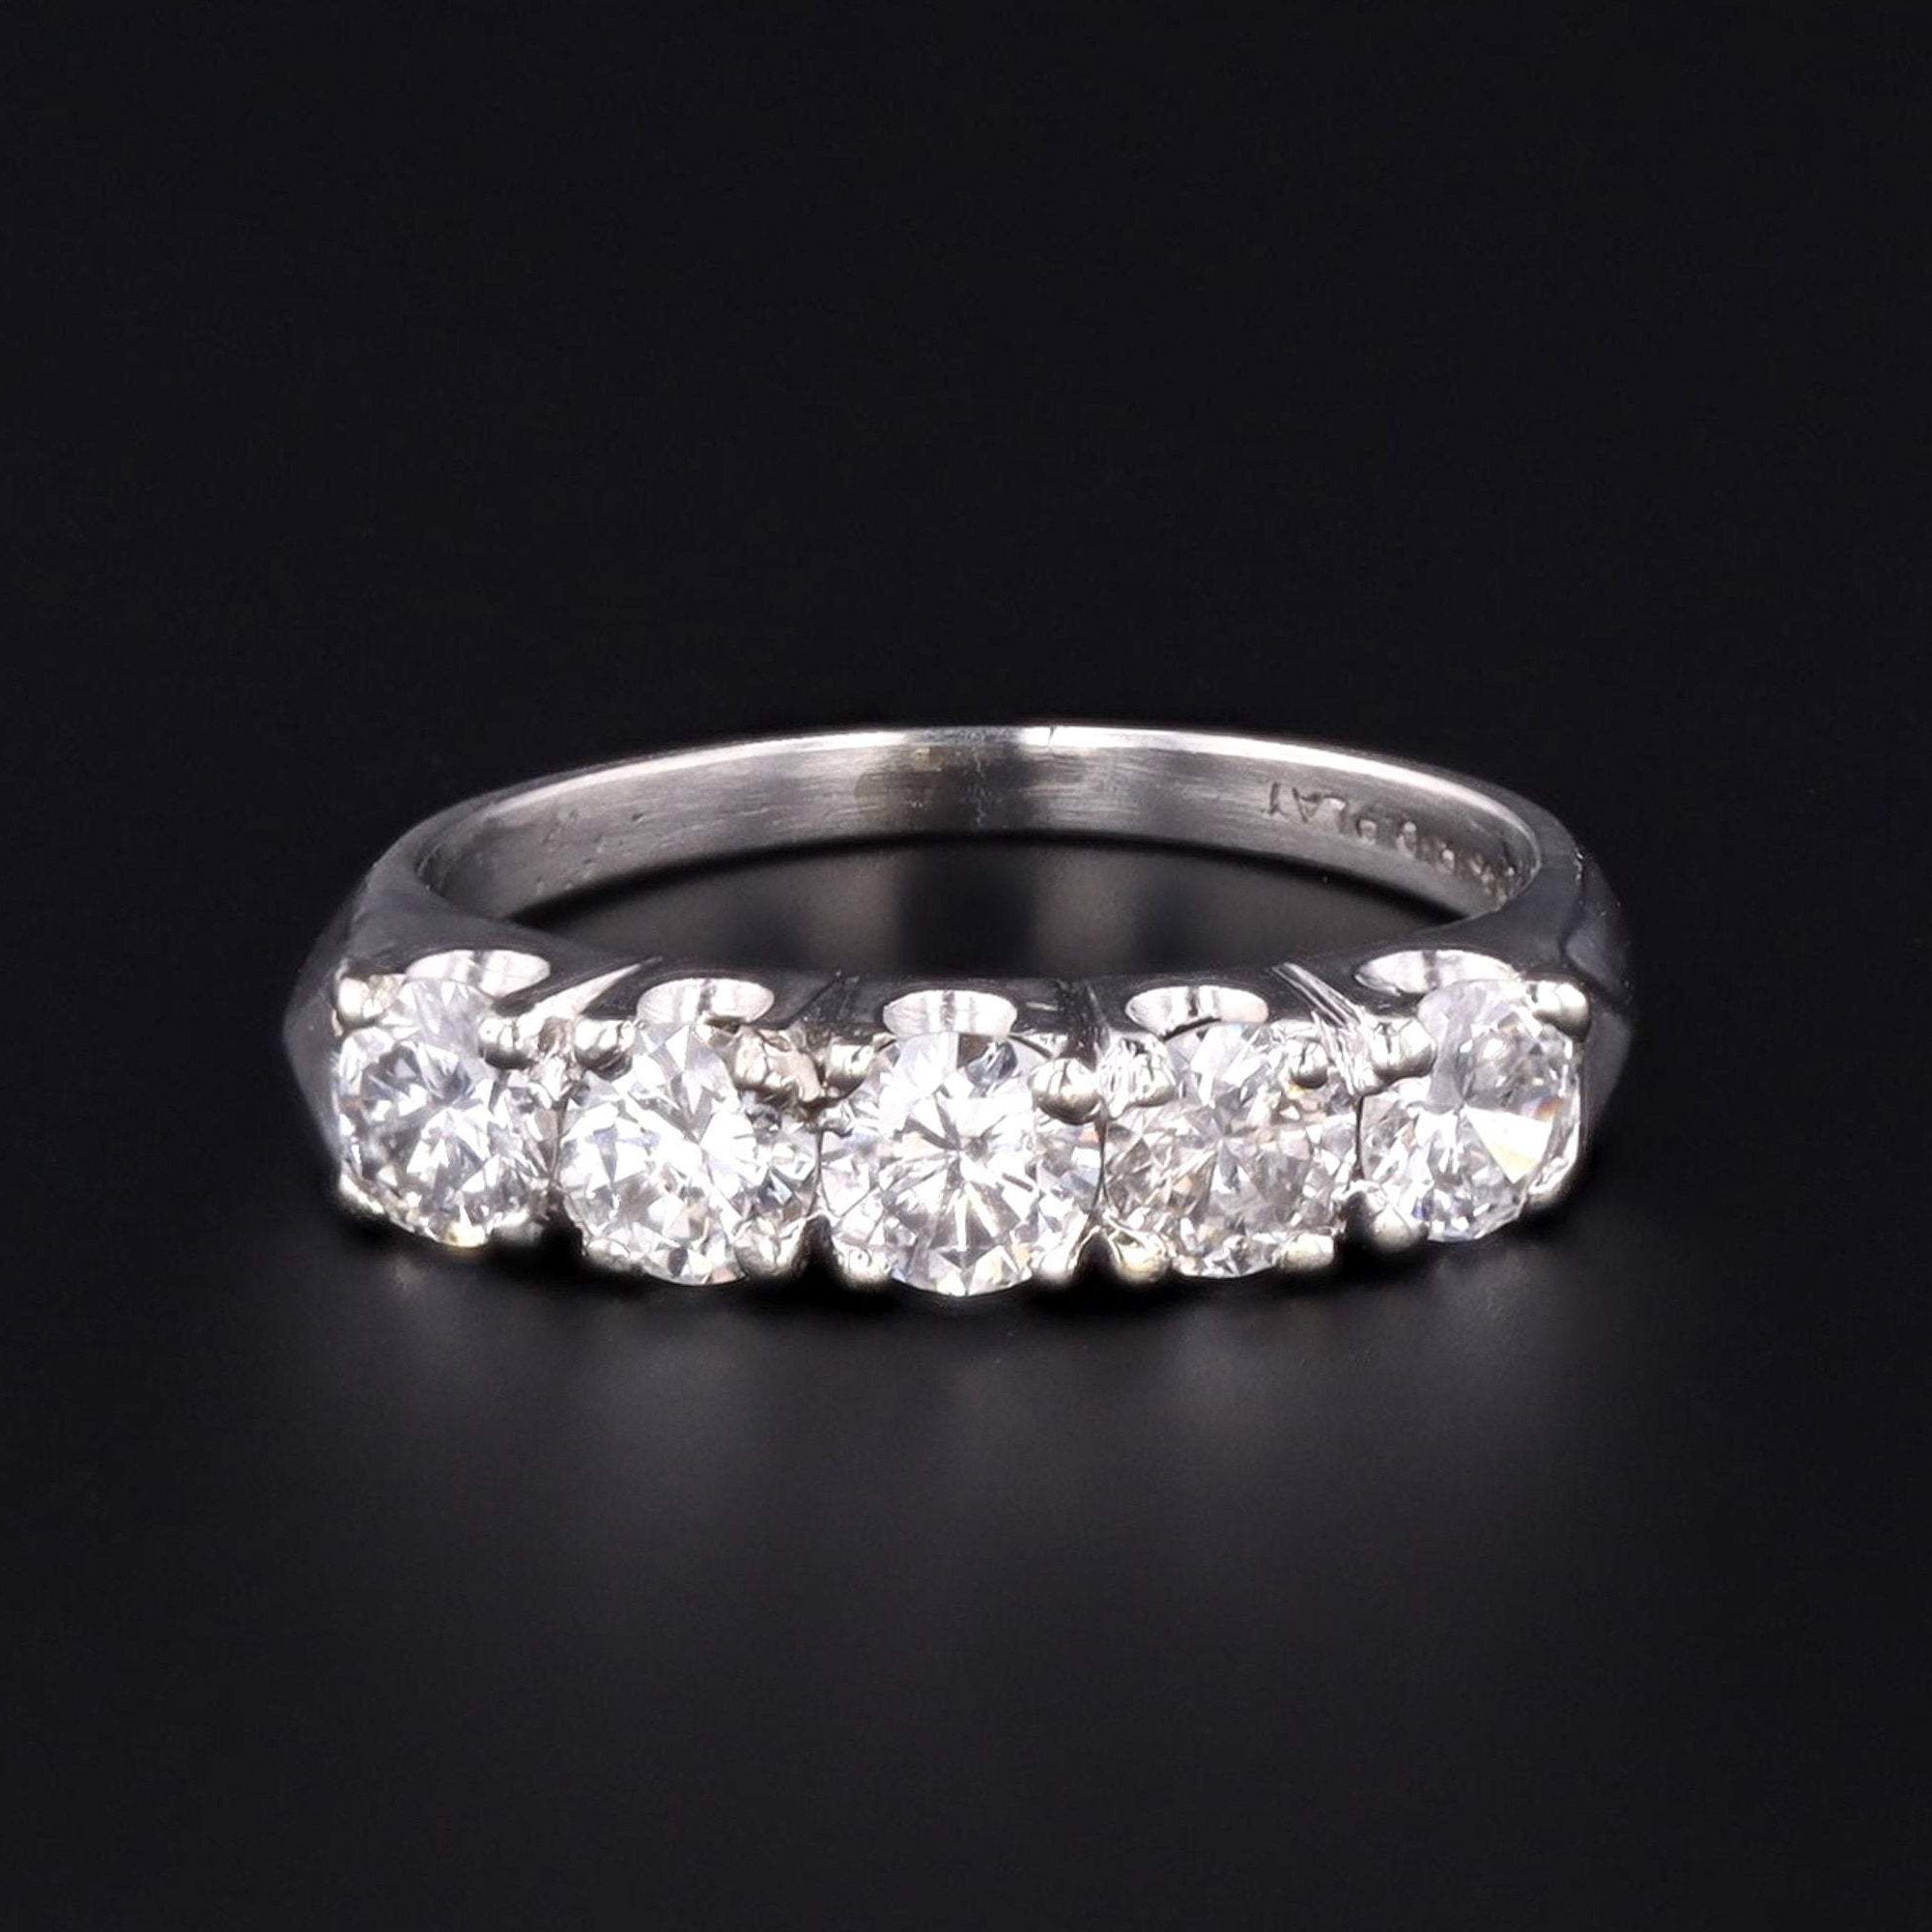 Diamond Ring | Vintage Diamond Ring | Platinum & Diamond Ring | Five Stone Diamond Ring